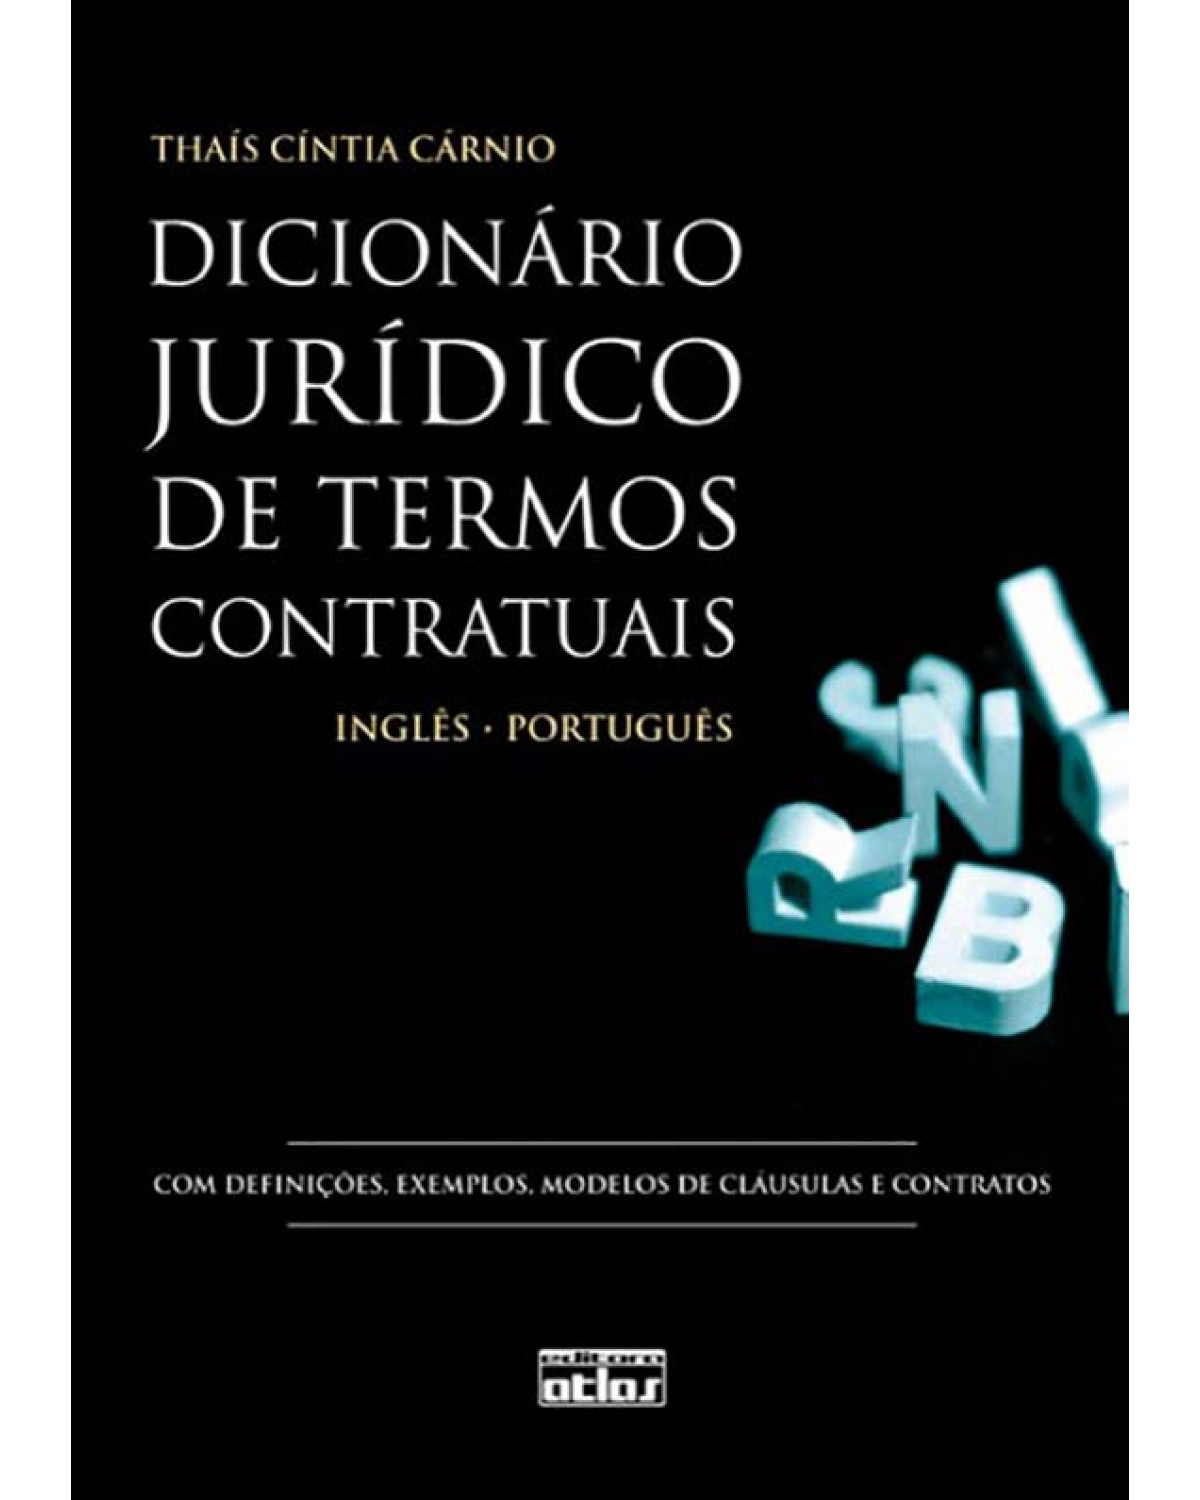 Dicionário jurídico de termos contratuais - Inglês - Português - 1ª Edição | 2010